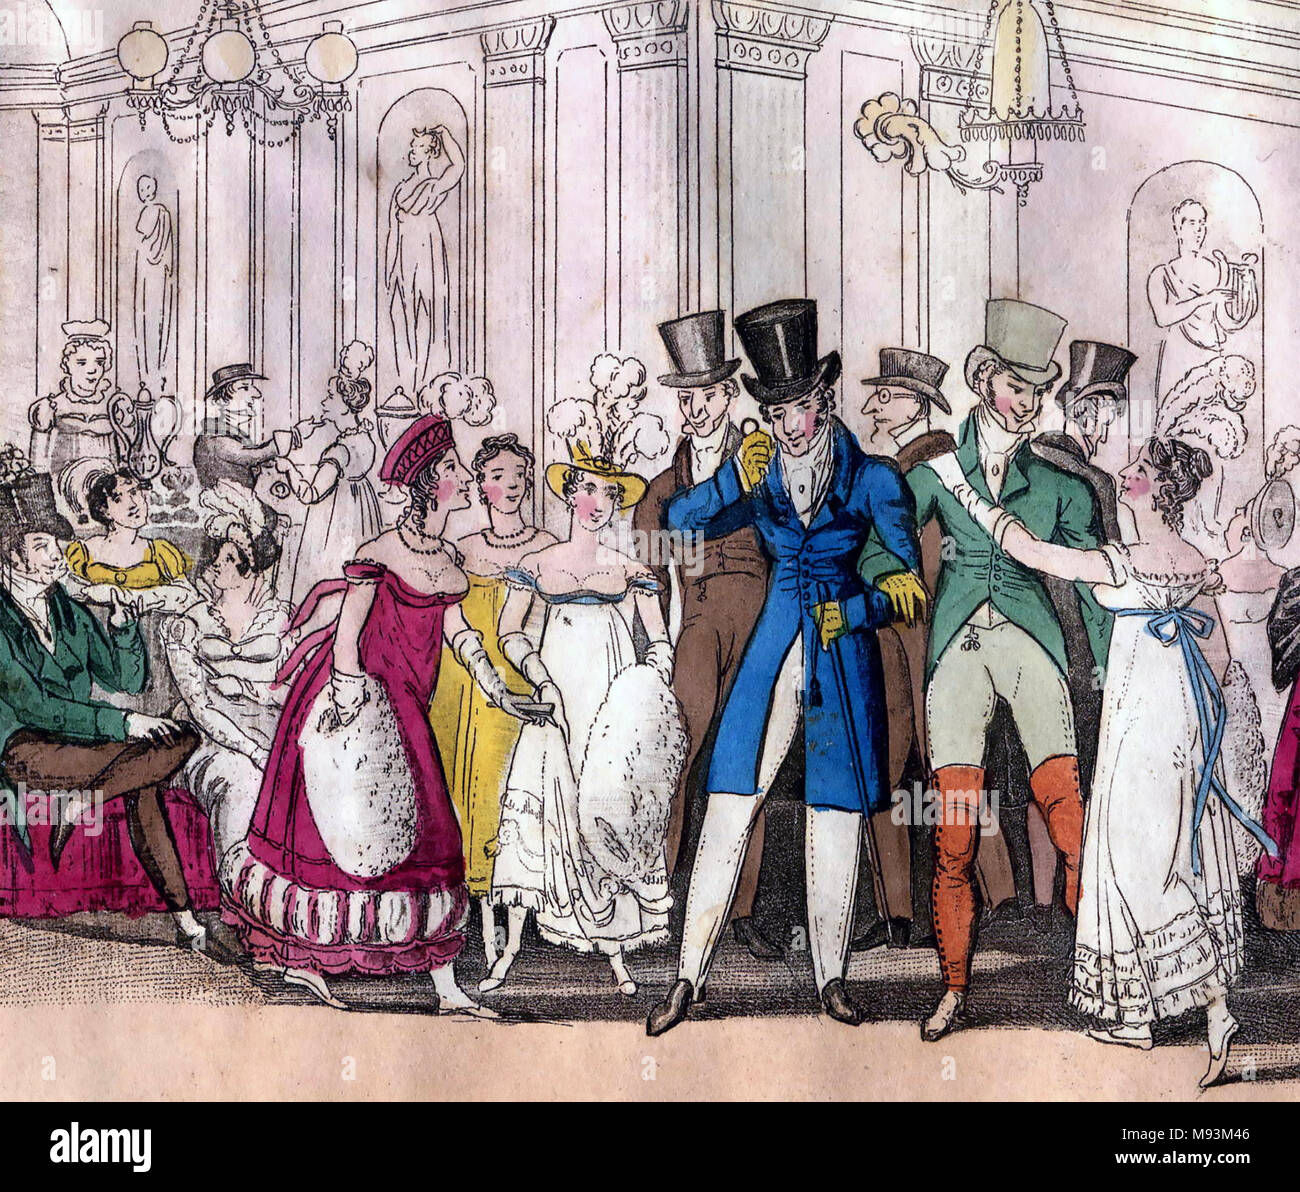 DRURY LANE THEATER Massen über 1825. Junge gallants die Aufmerksamkeit der jungen Damen, die während des Intervalls. Stockfoto